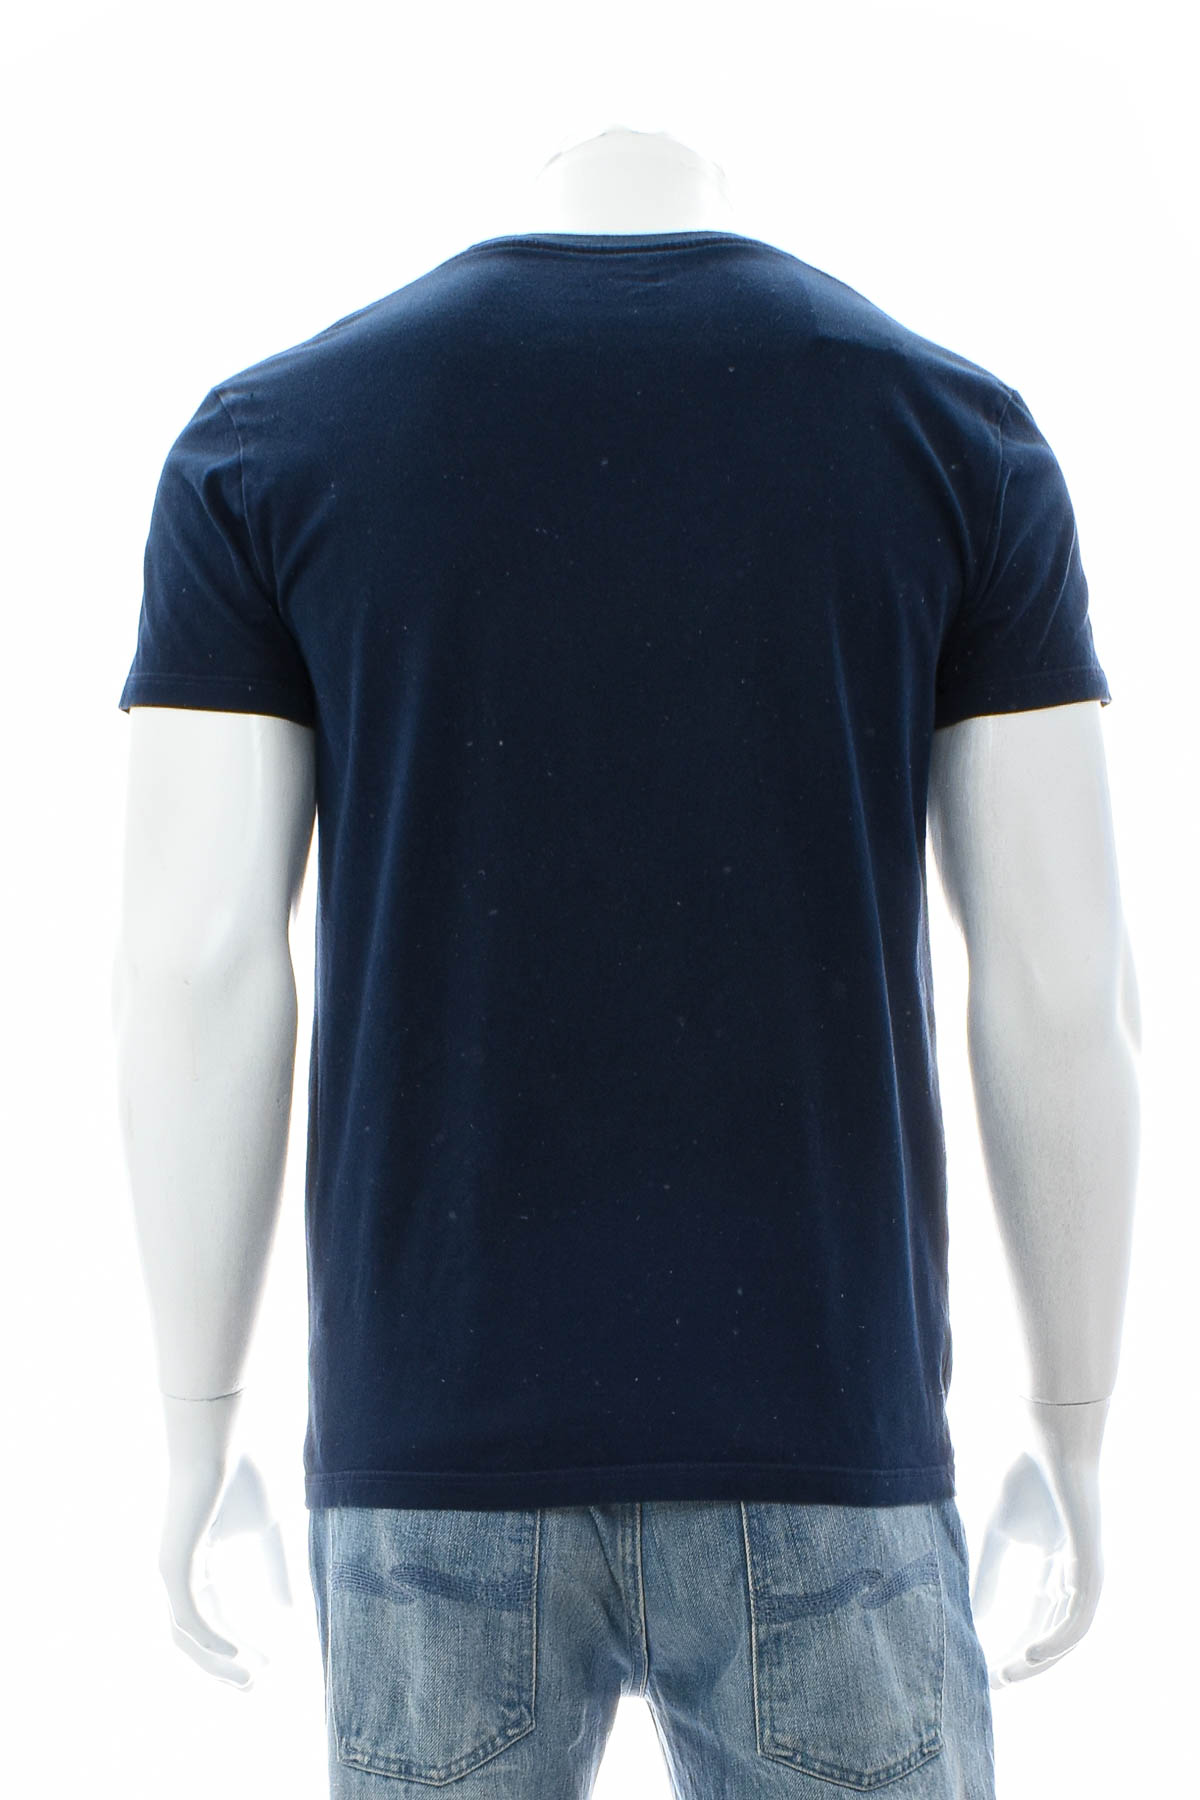 Ανδρικό μπλουζάκι - Trigema - 1